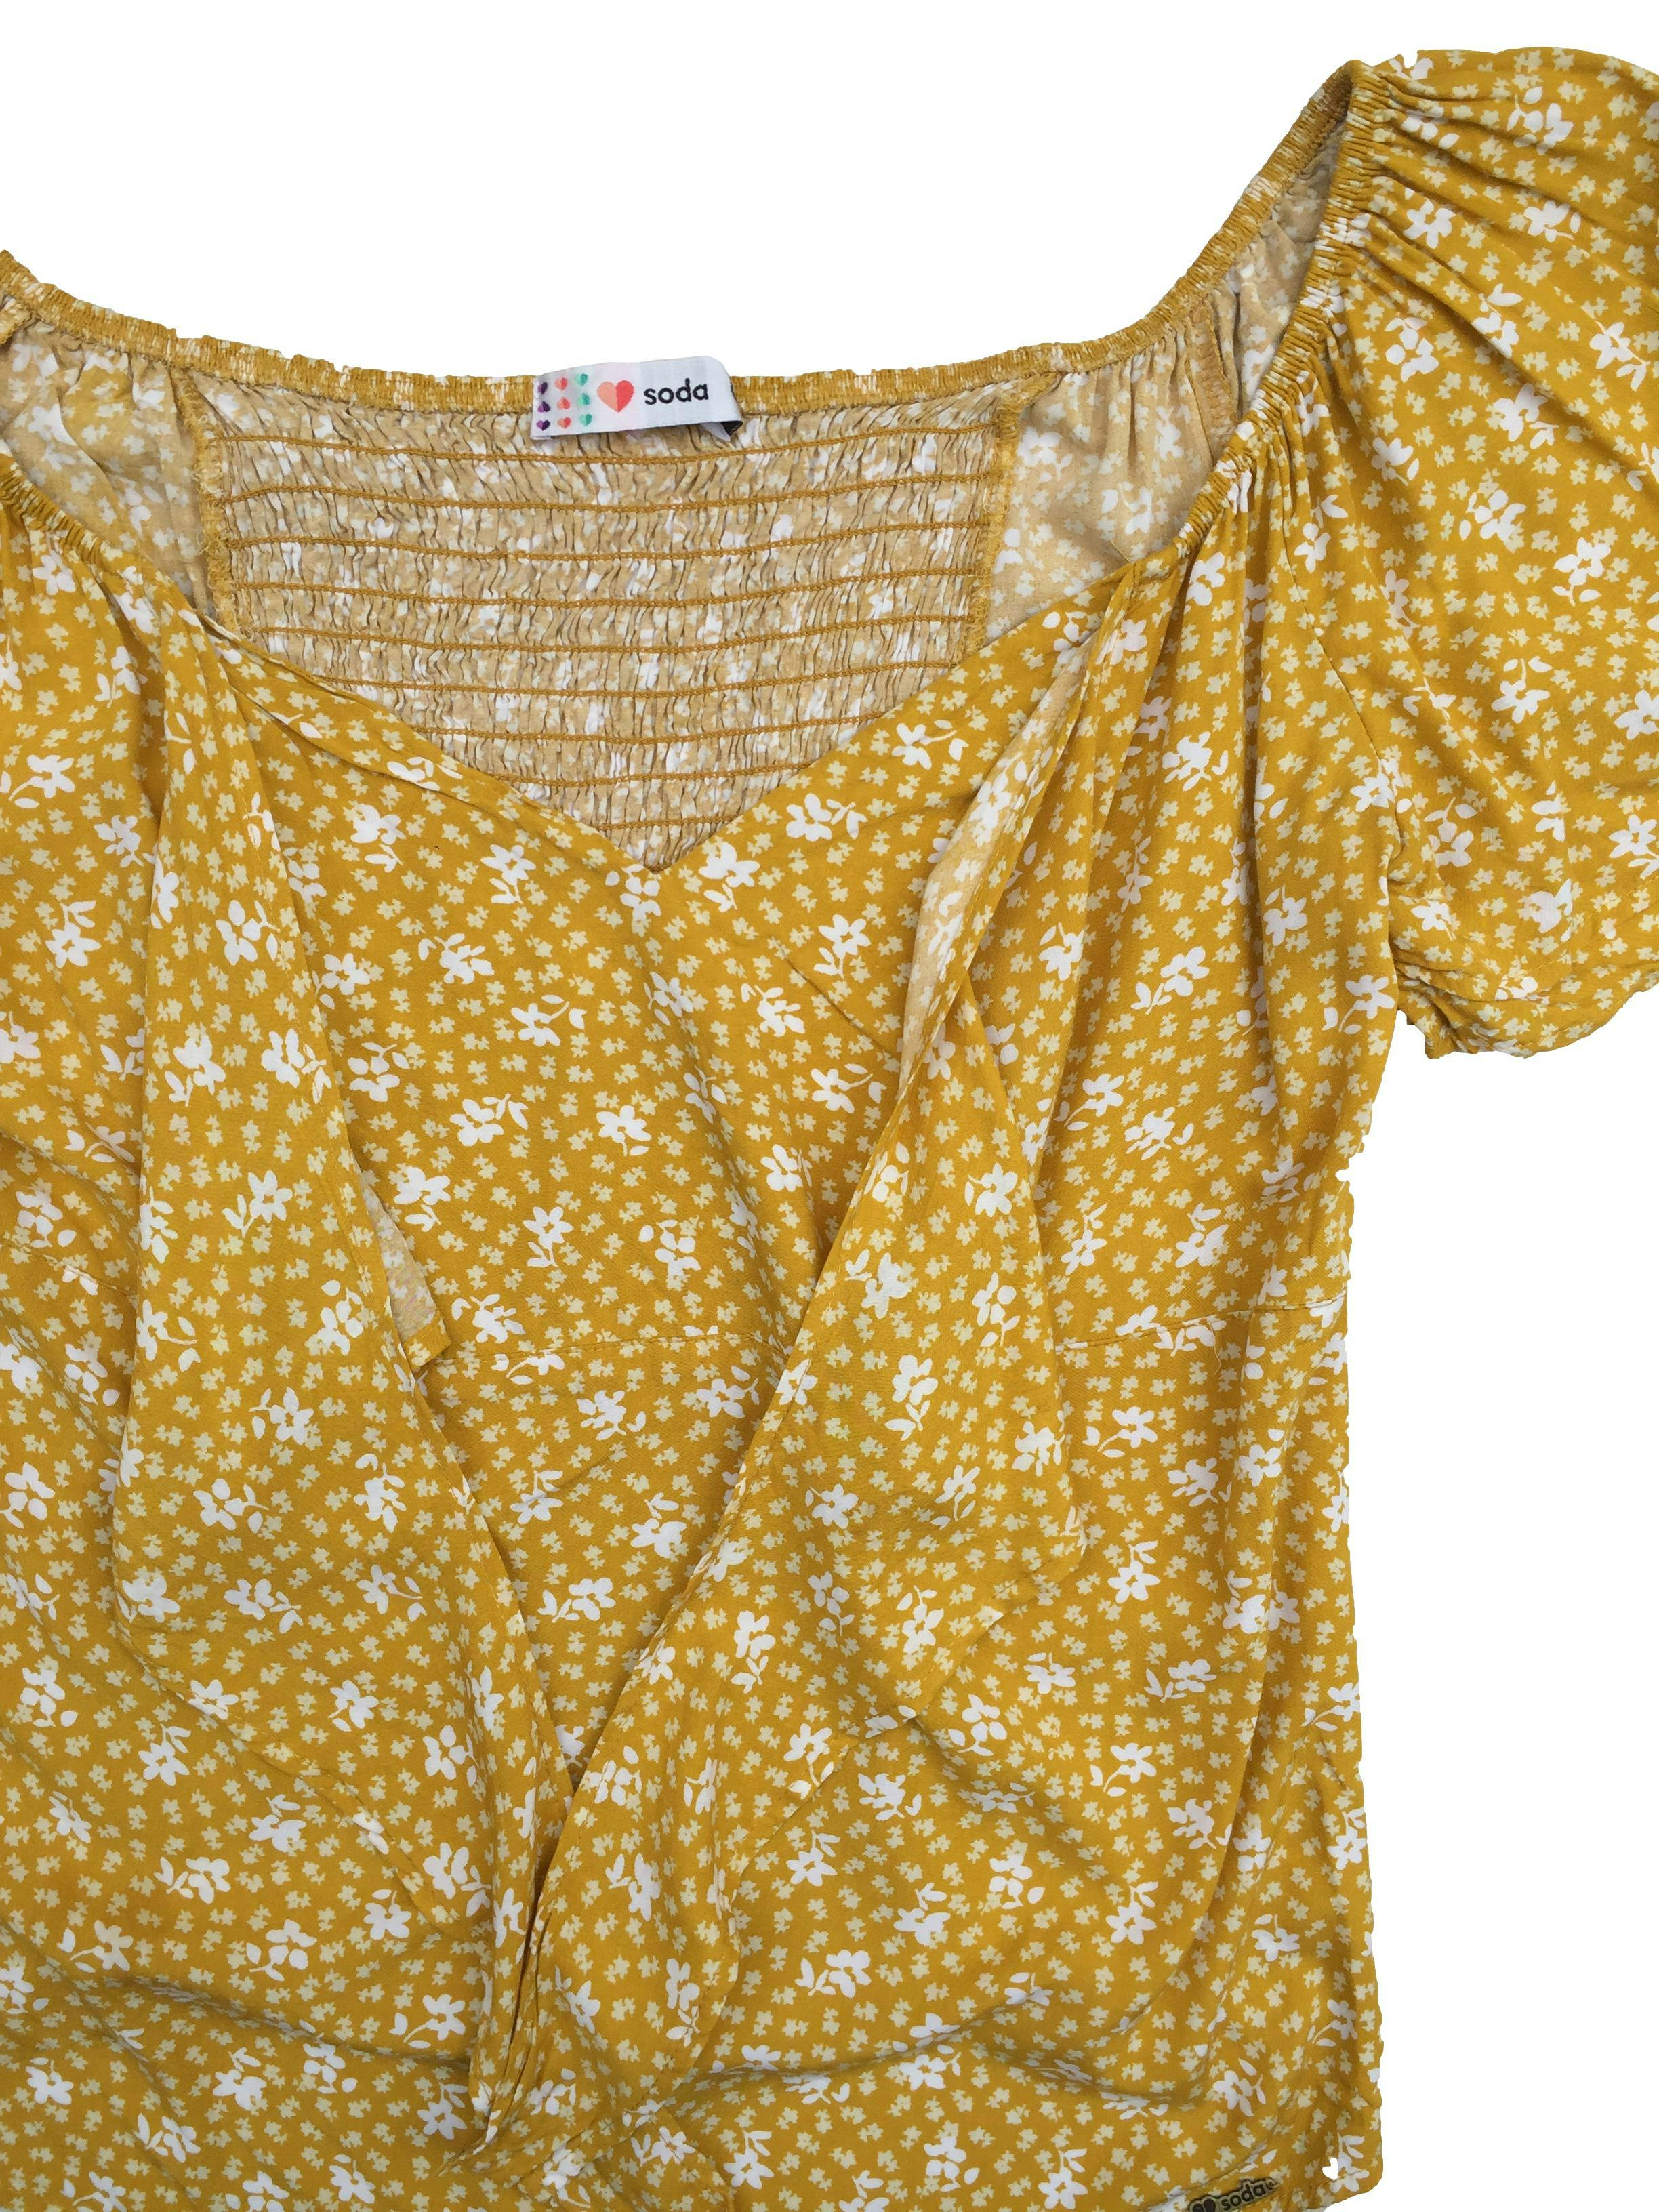 Blusa Soda off shoulder de fondo amarillo con estampado de flores blancas, volante en mangas, panal de abeja en la espalda y cinto para amarrar en el pecho. Busto 106 cm, Largo 59 cm.